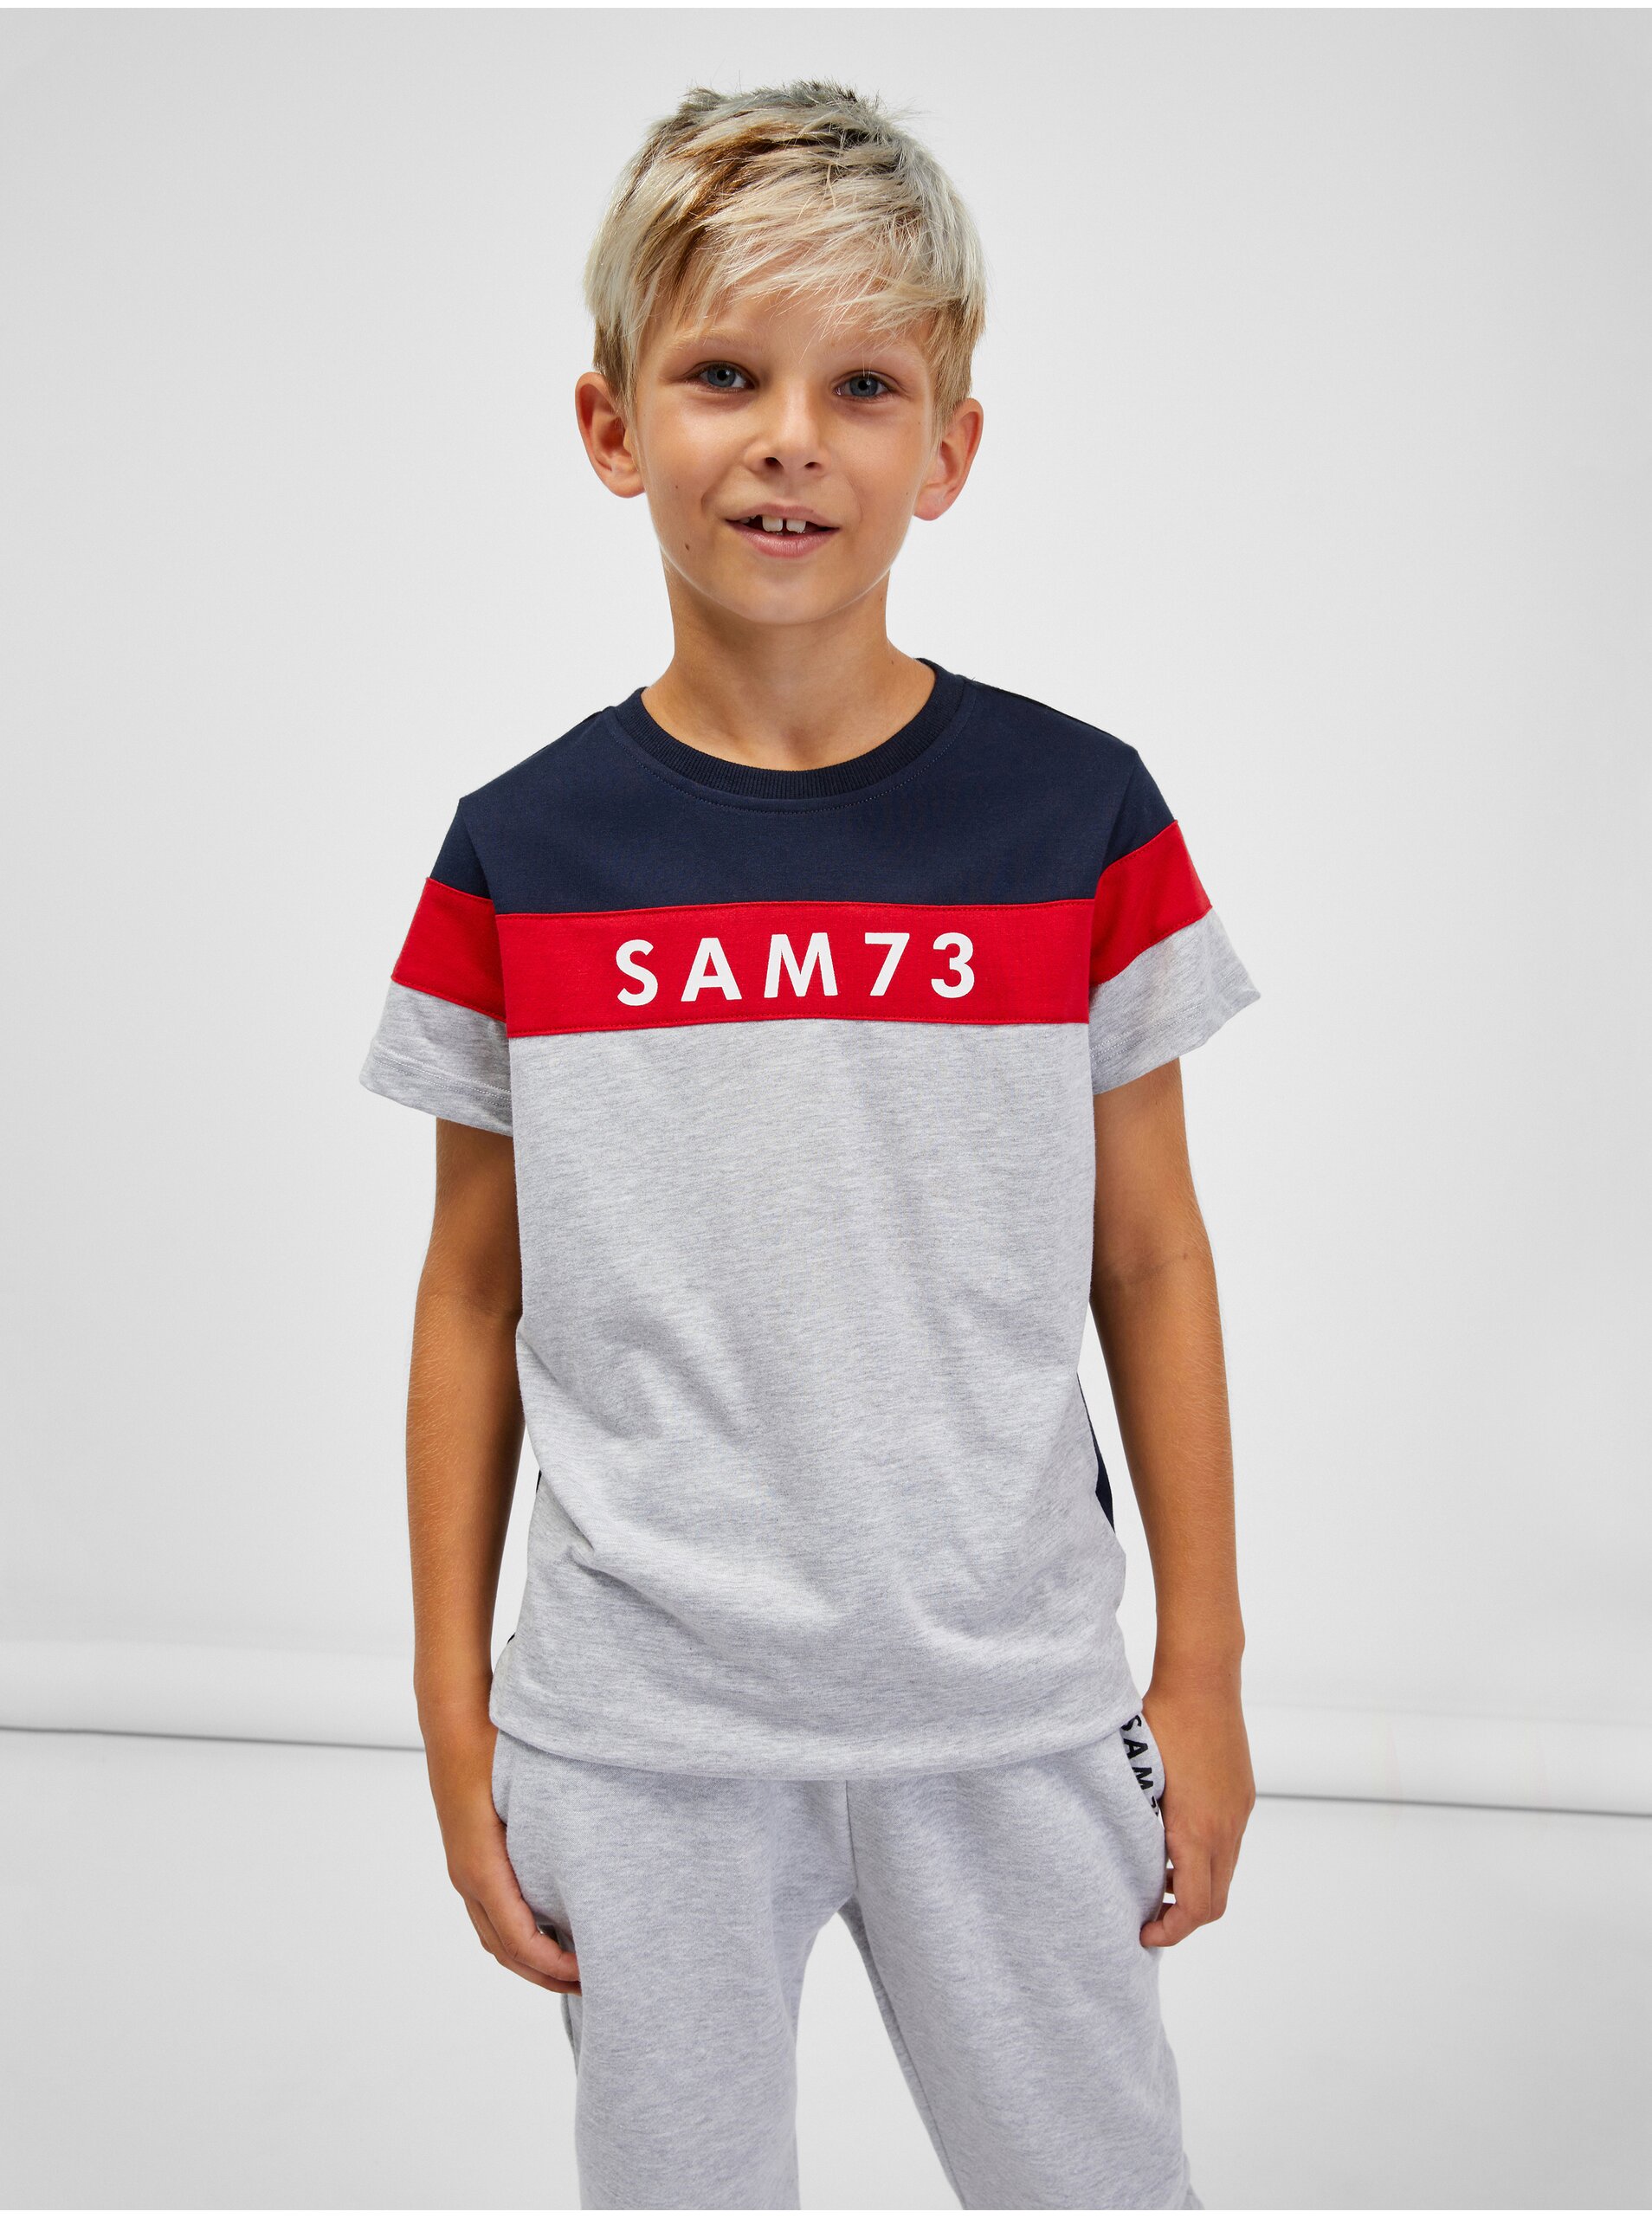 Lacno Modro-sivé chlapčenské melírované tričko SAM 73 Kallan